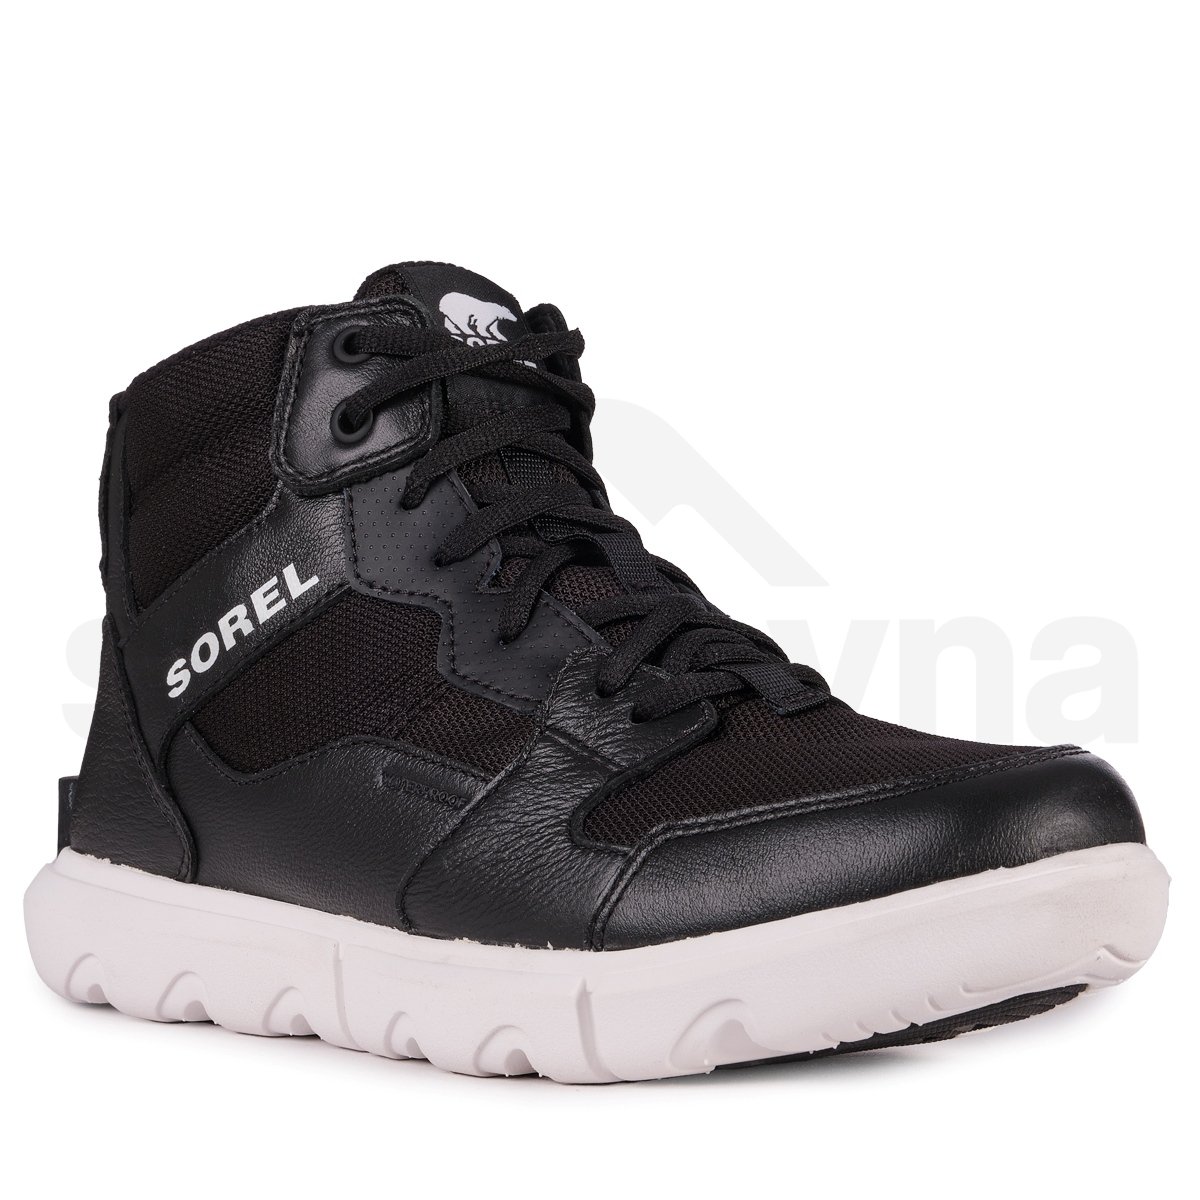 Obuv Sorel Explorer™ Sneaker Mid WP M - černá/bílá